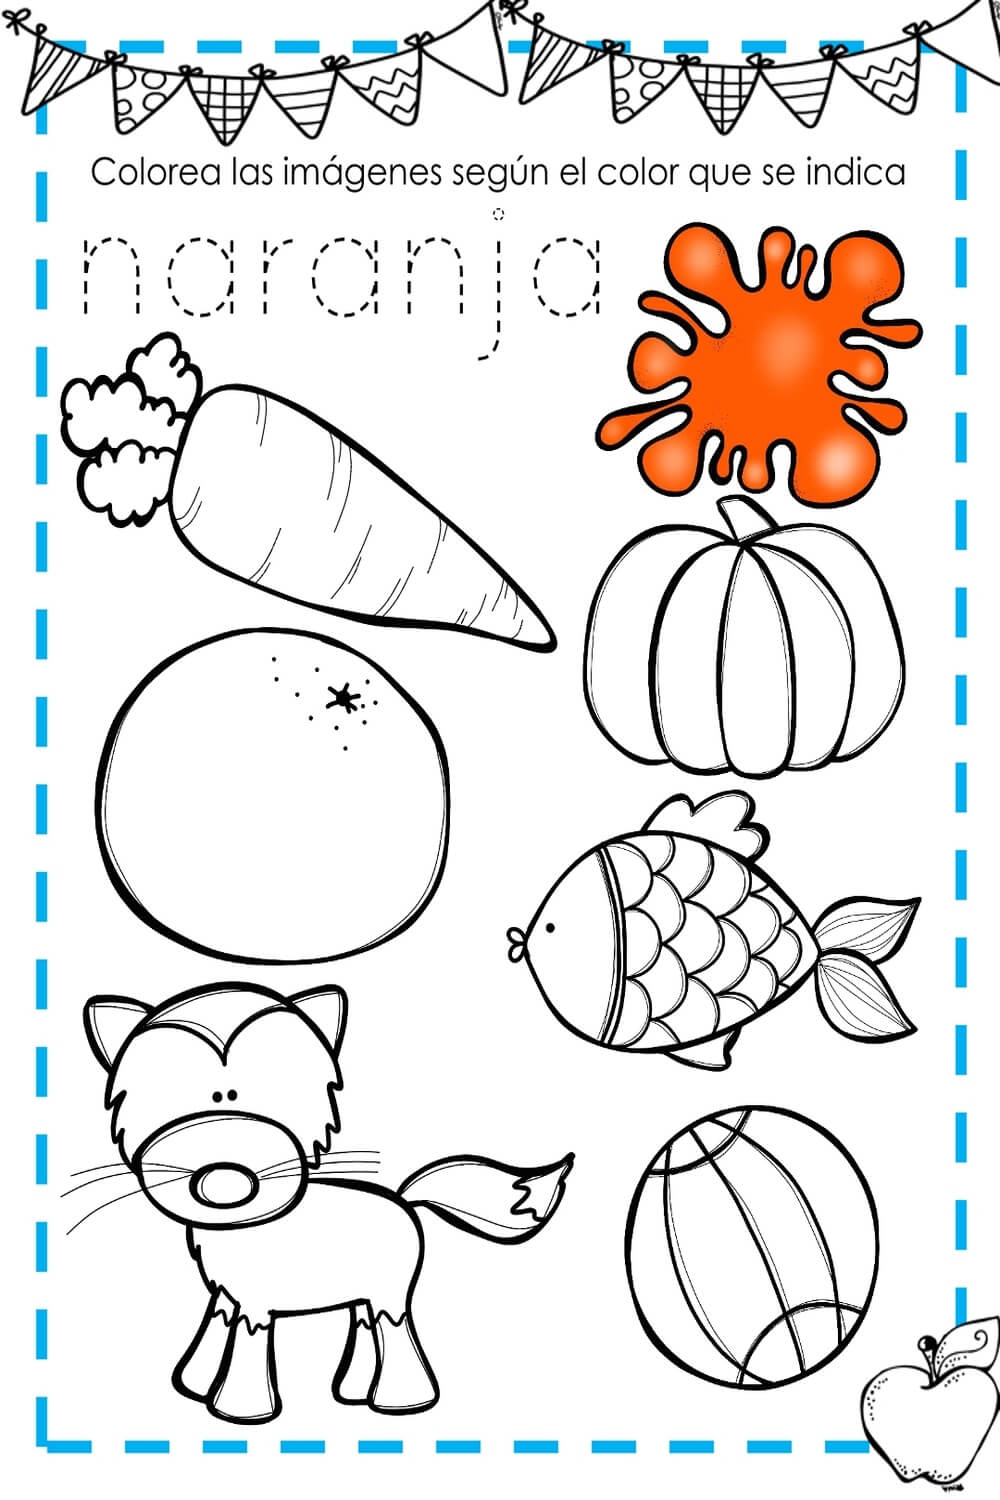 Libro de actividades para aprender los números, colores y formas. Dibujos  para colorear | cuaderno preescolar para los niños de 3-5 años. Con